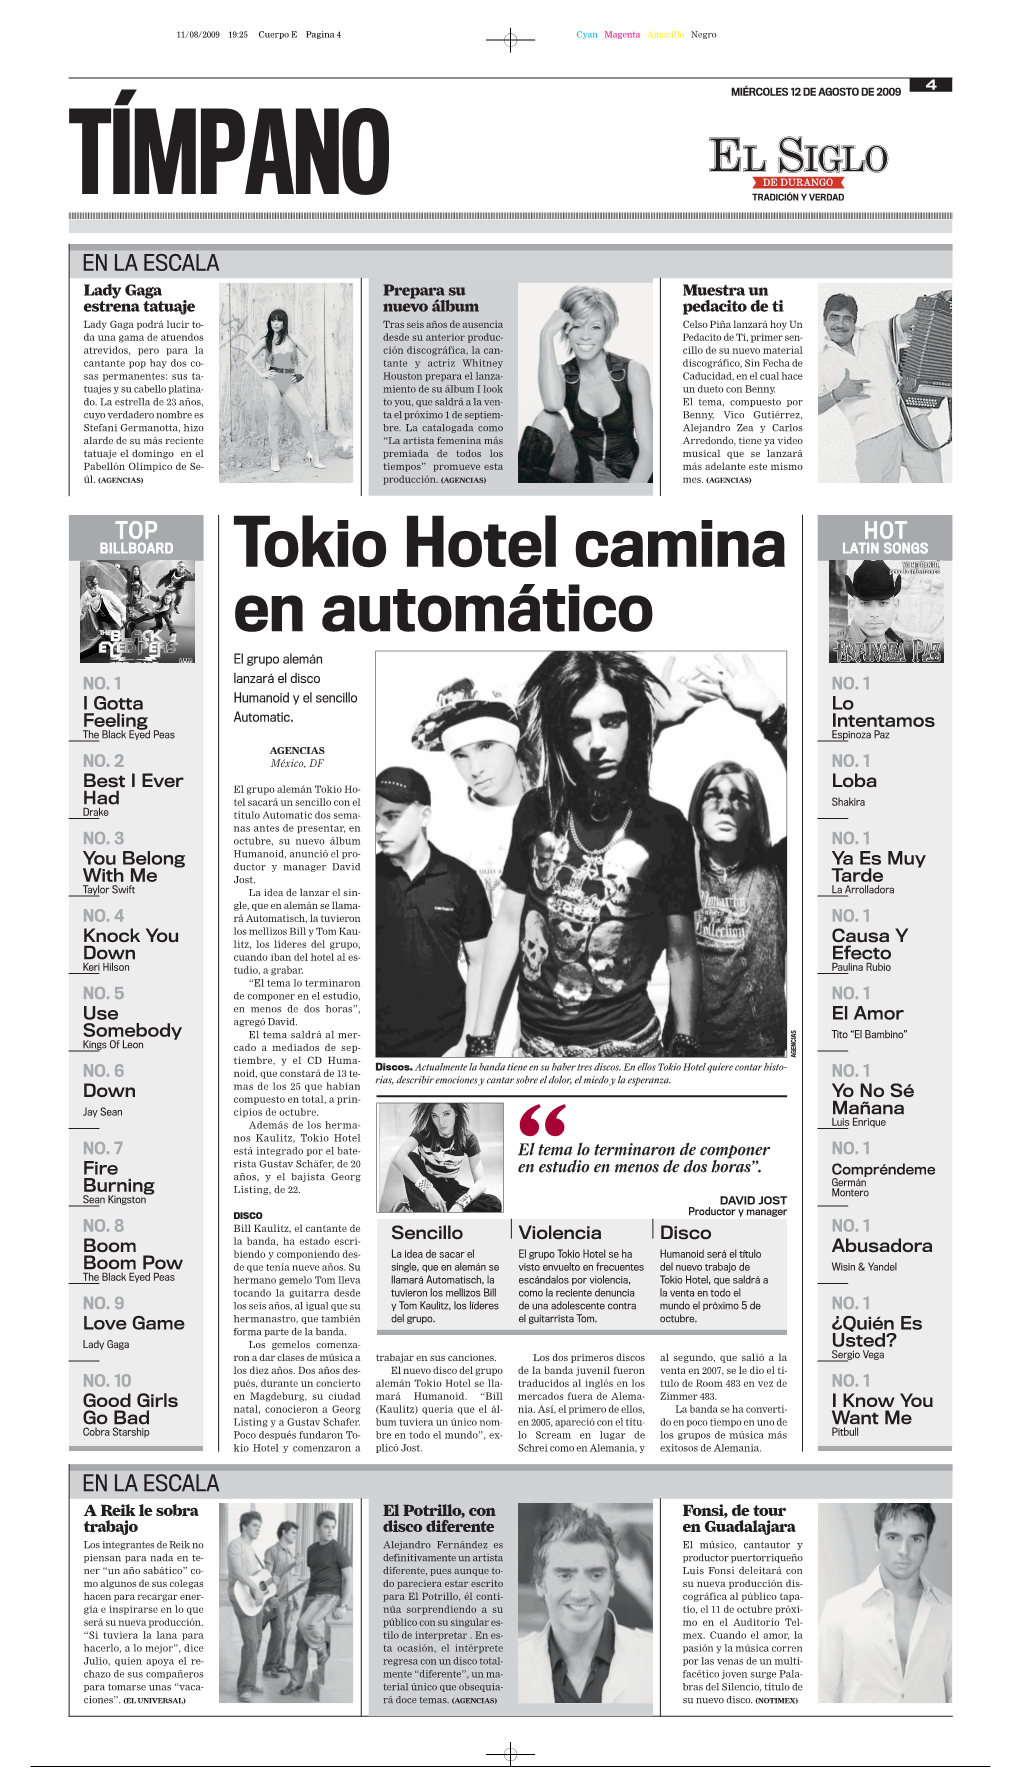 Tokio Hotel Camina En Automático